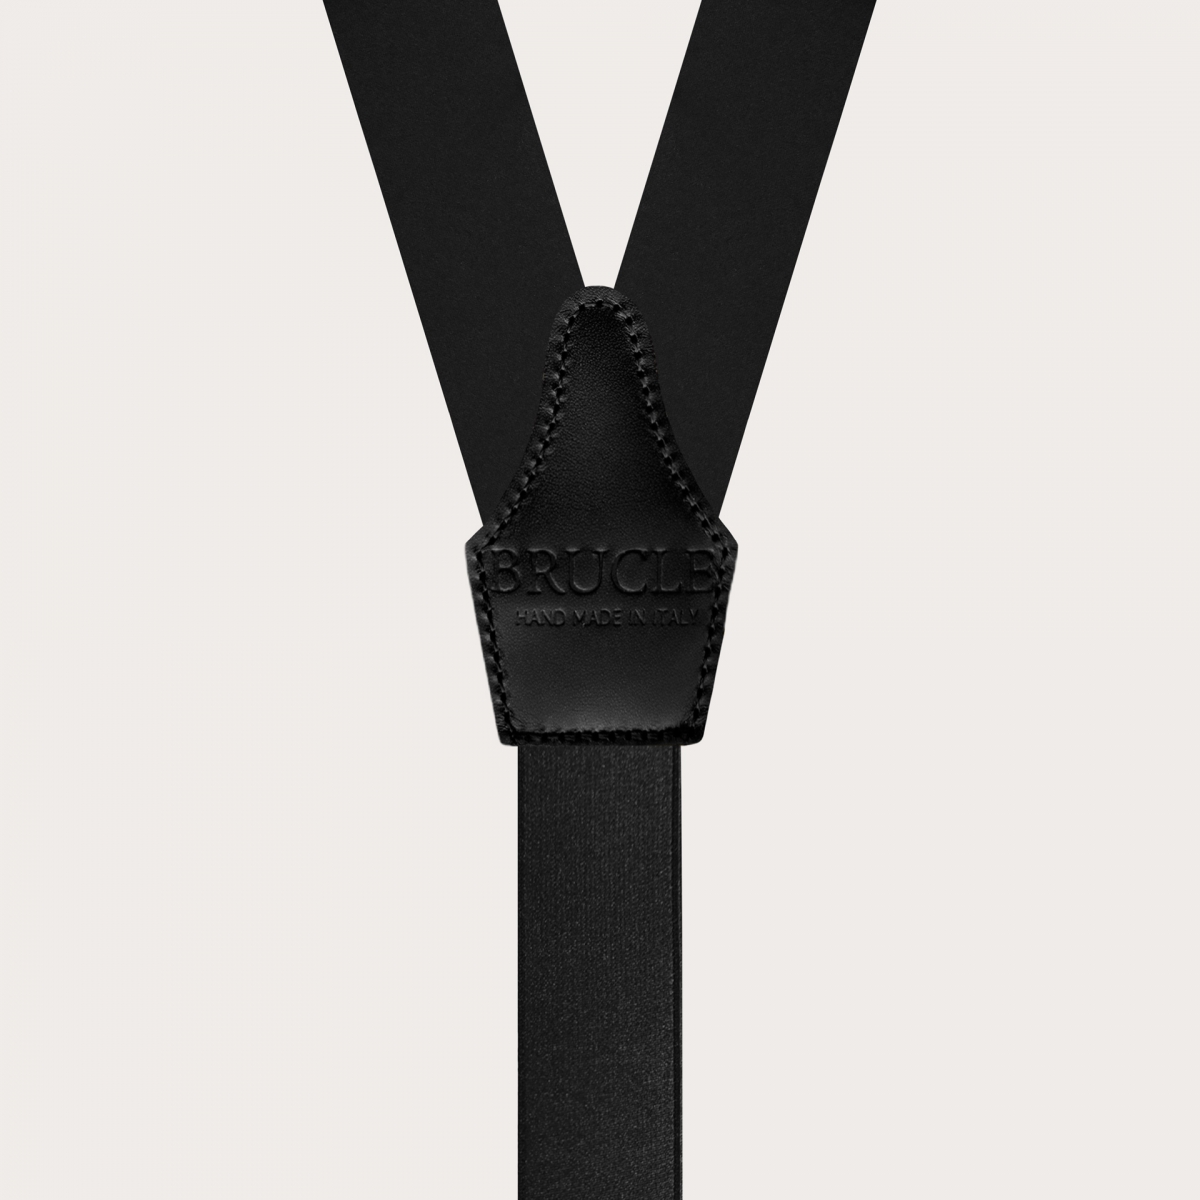 Brucle Black Satin Suspenders